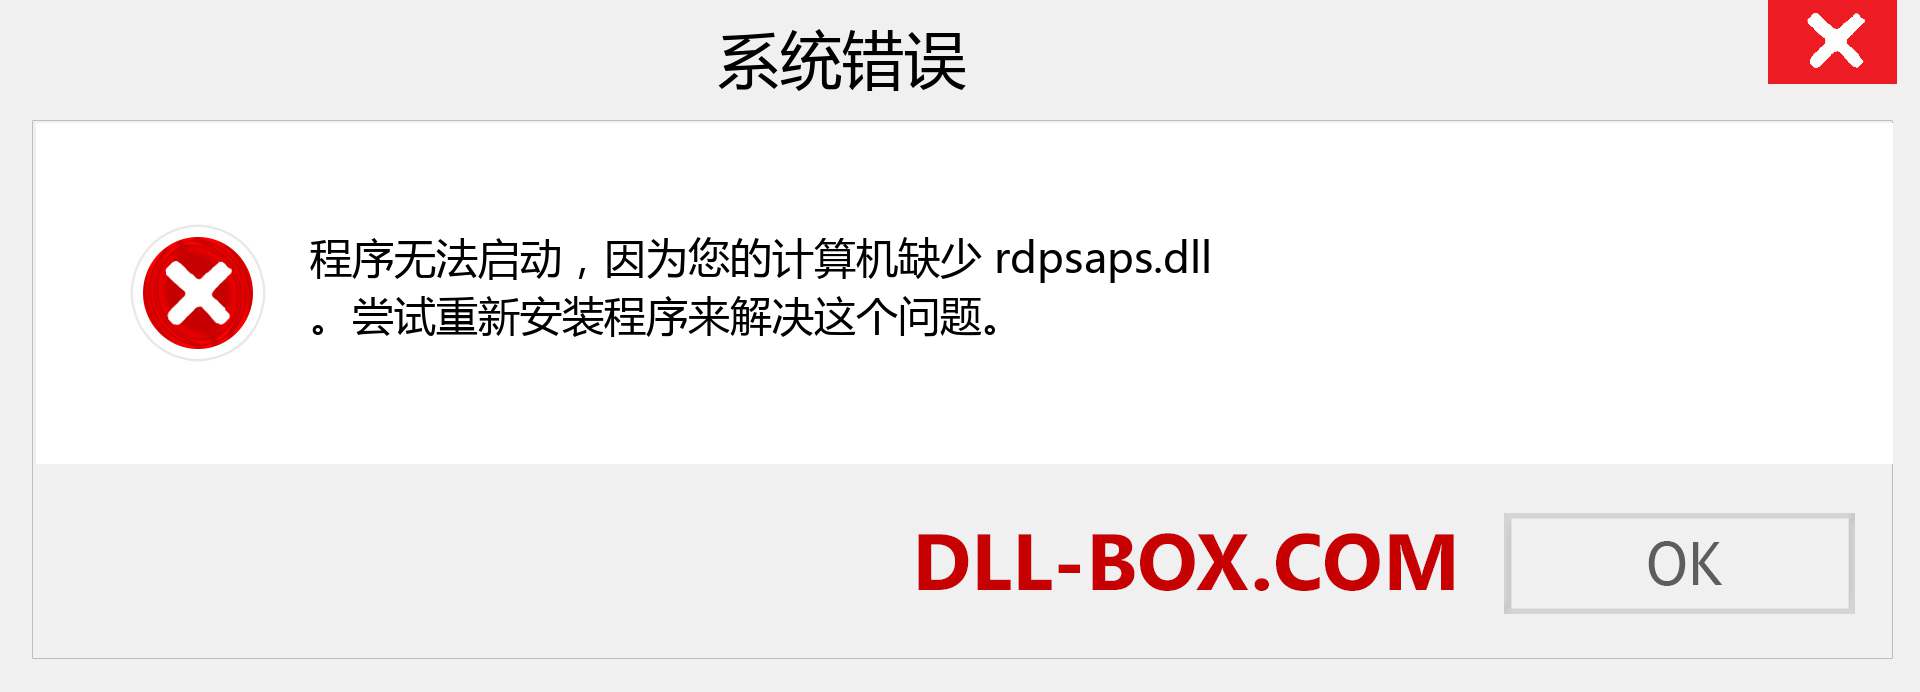 rdpsaps.dll 文件丢失？。 适用于 Windows 7、8、10 的下载 - 修复 Windows、照片、图像上的 rdpsaps dll 丢失错误